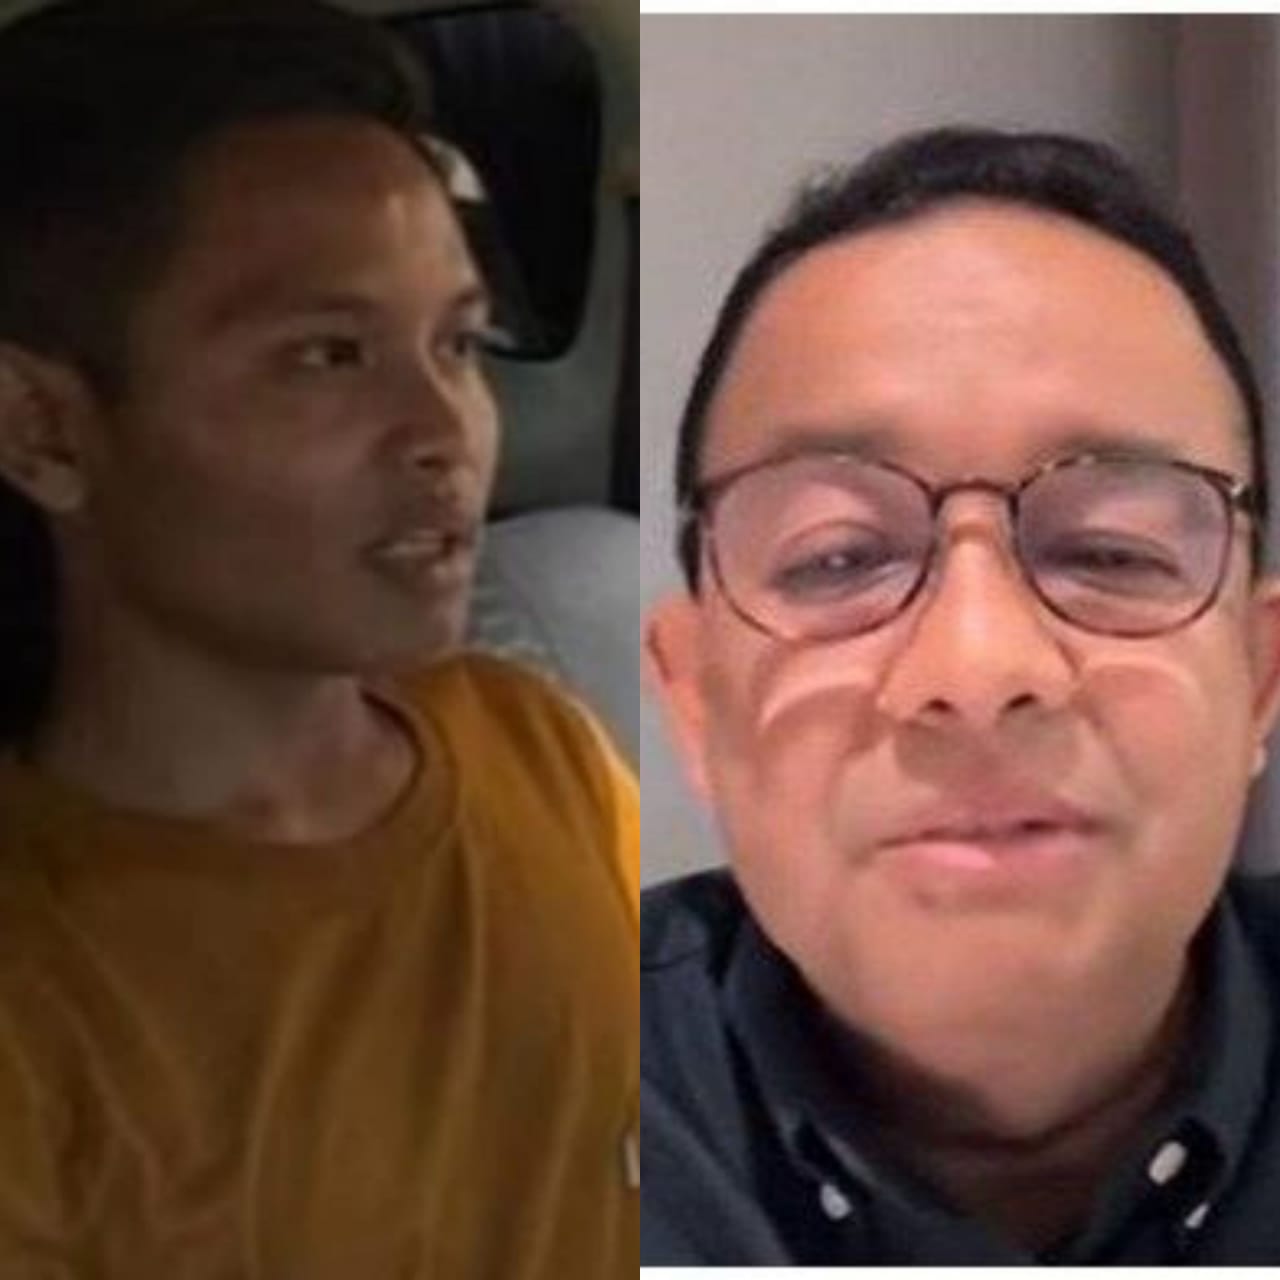 Mengenal Sosok Arjun Wijaya Kusumo, Pelaku Pengancam Anies Baswedan di TikTok: Ternyata Bukan Orang Biasa?